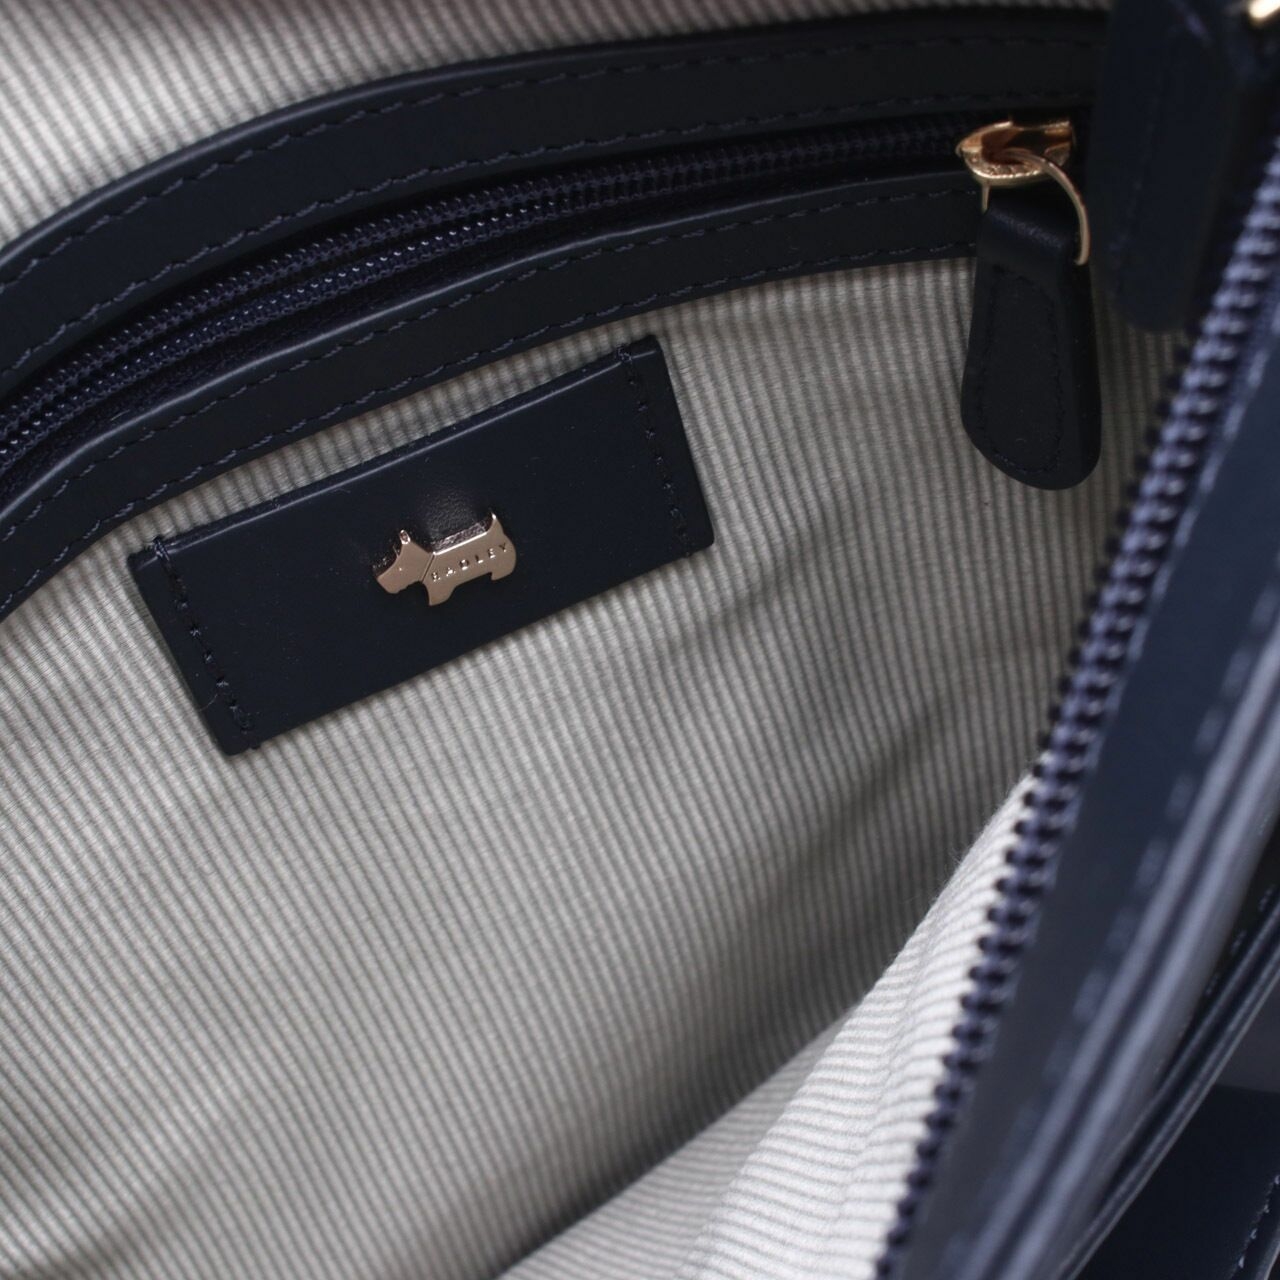 Radley London Navy Pocket Sling Bag	